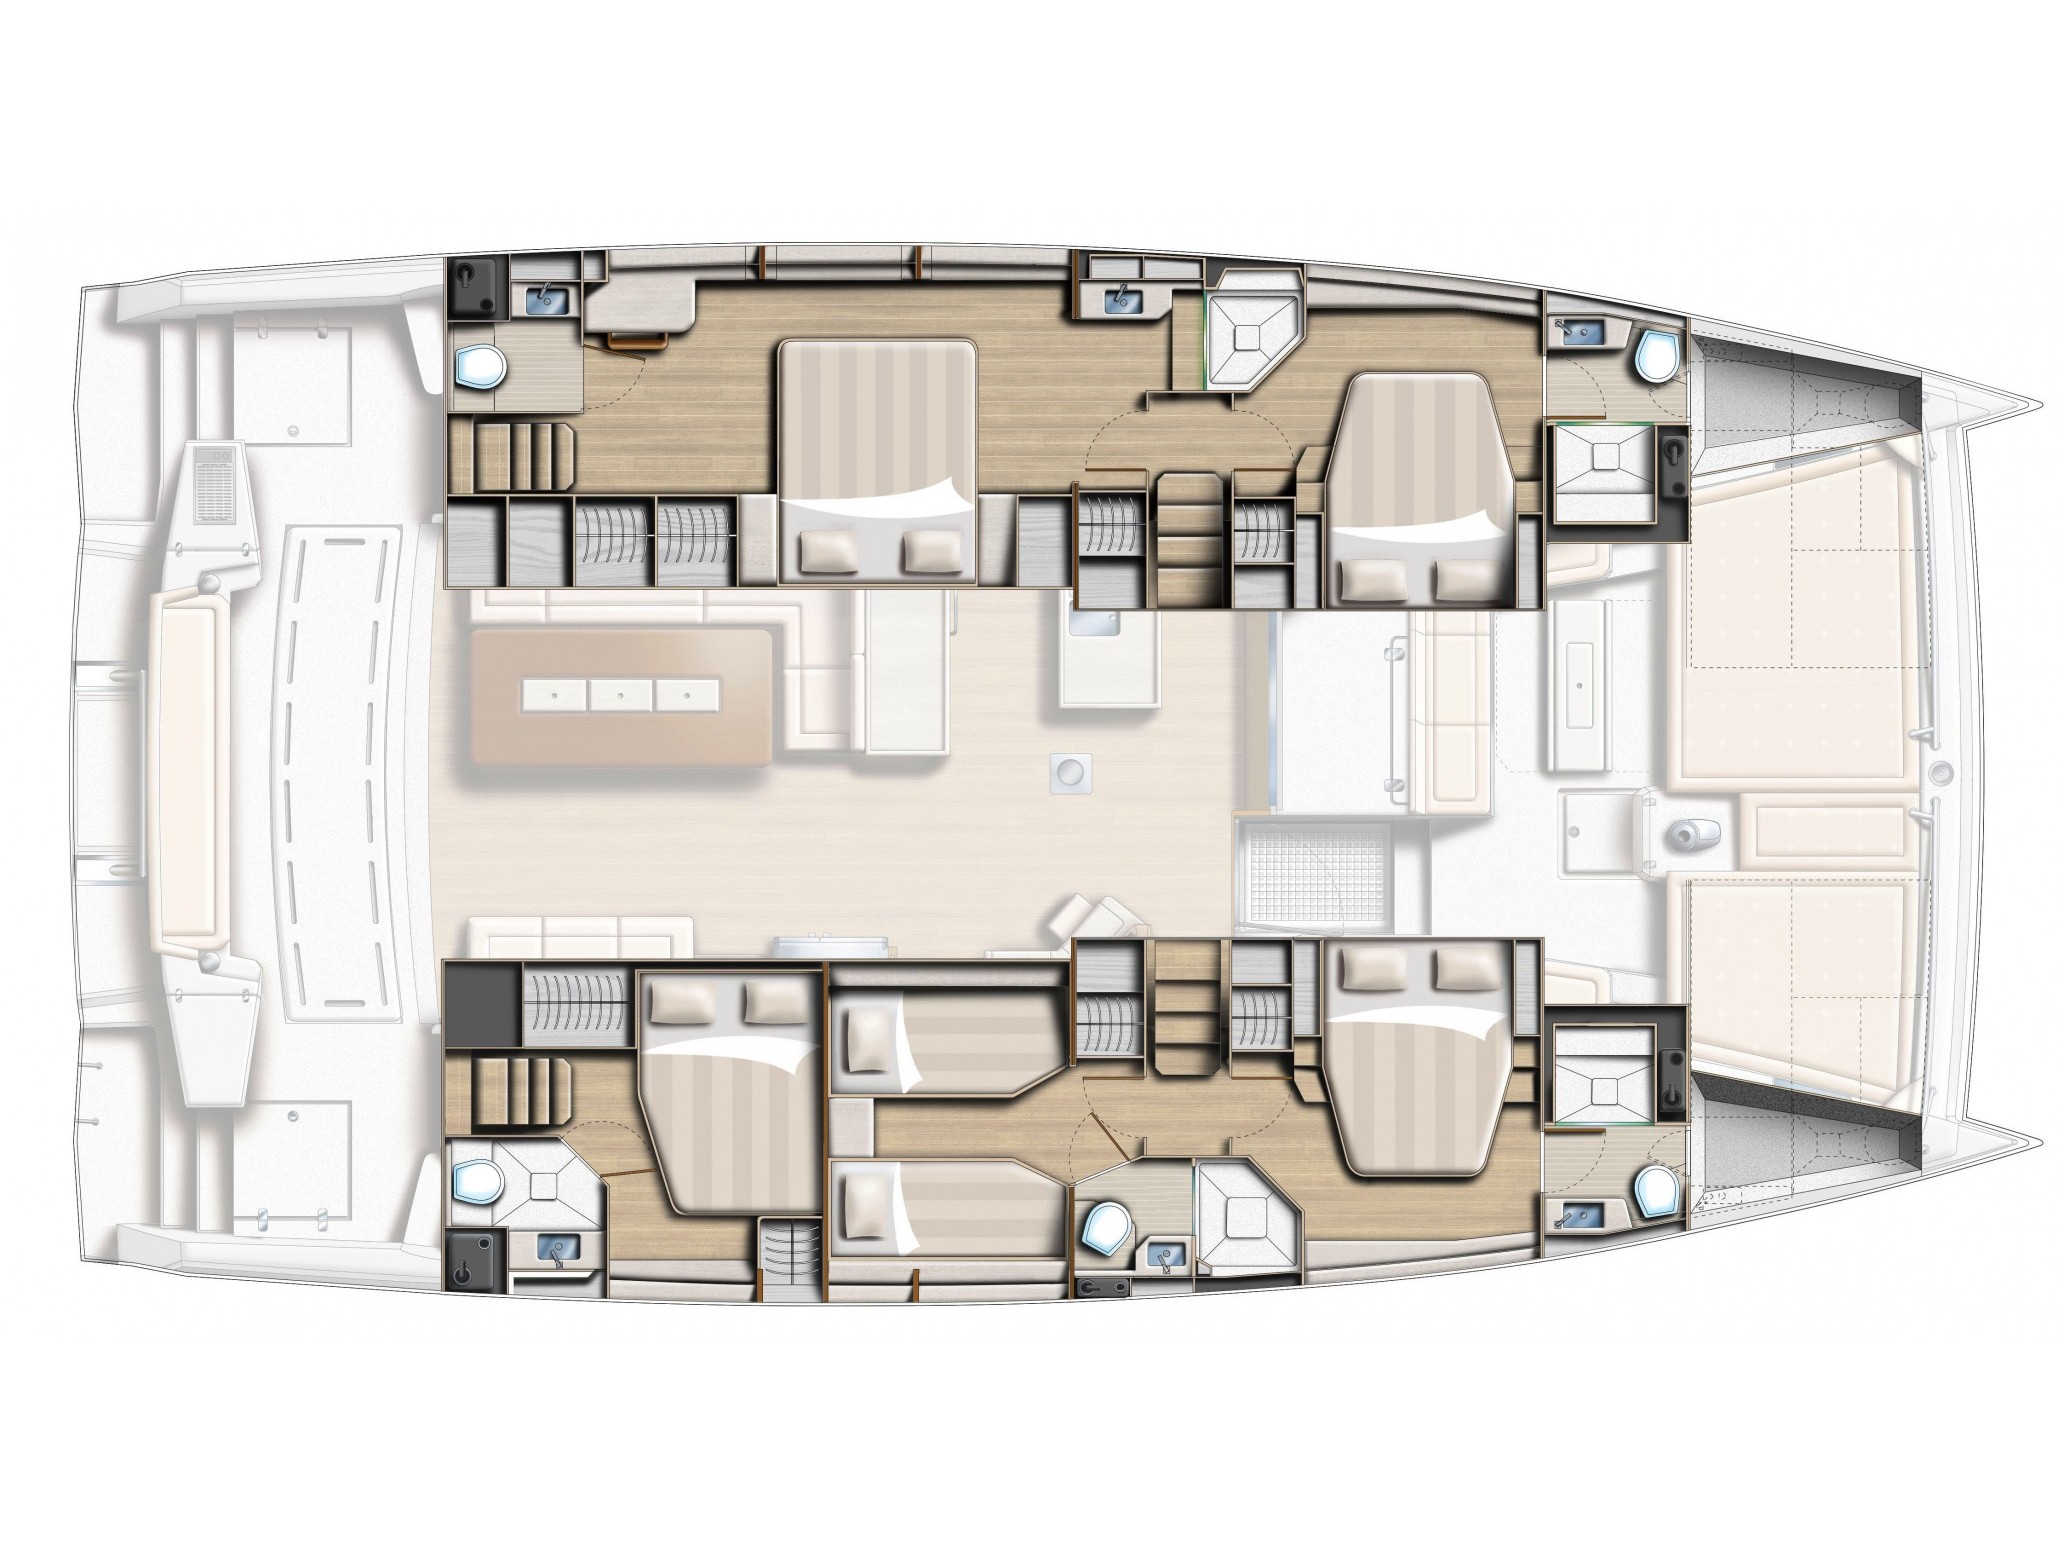 Bali 5.4 - Luxury yacht charter Sicily & Boat hire in Italy Sicily Aeolian Islands Capo d'Orlando Capo d'Orlando Marina 6